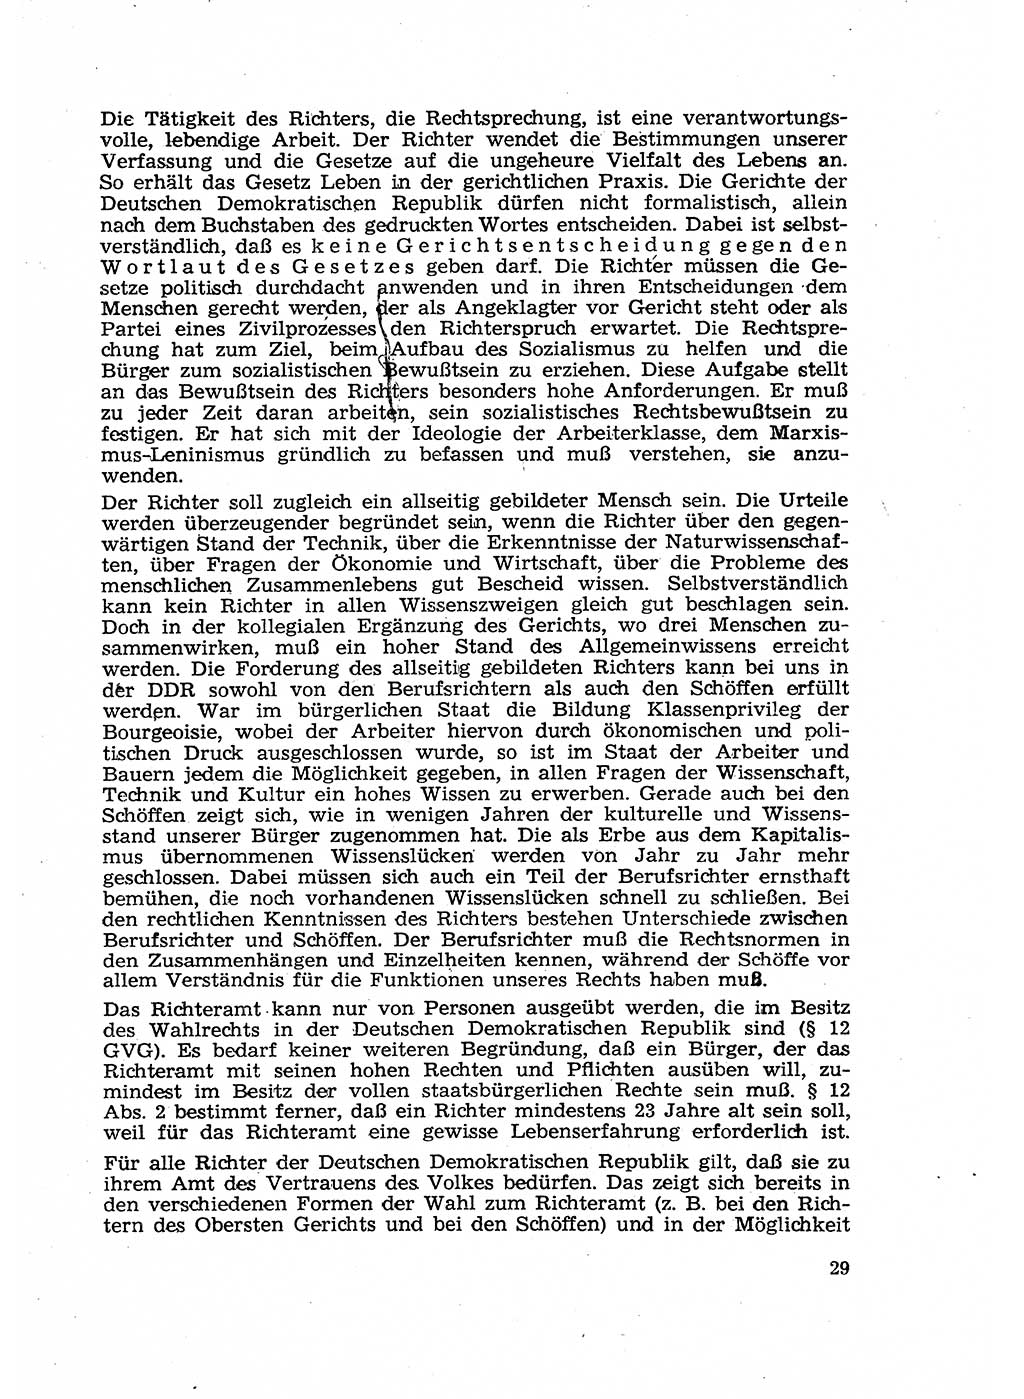 Gericht und Rechtsprechung in der Deutschen Demokratischen Republik (DDR) 1956, Seite 29 (Ger. Rechtspr. DDR 1956, S. 29)